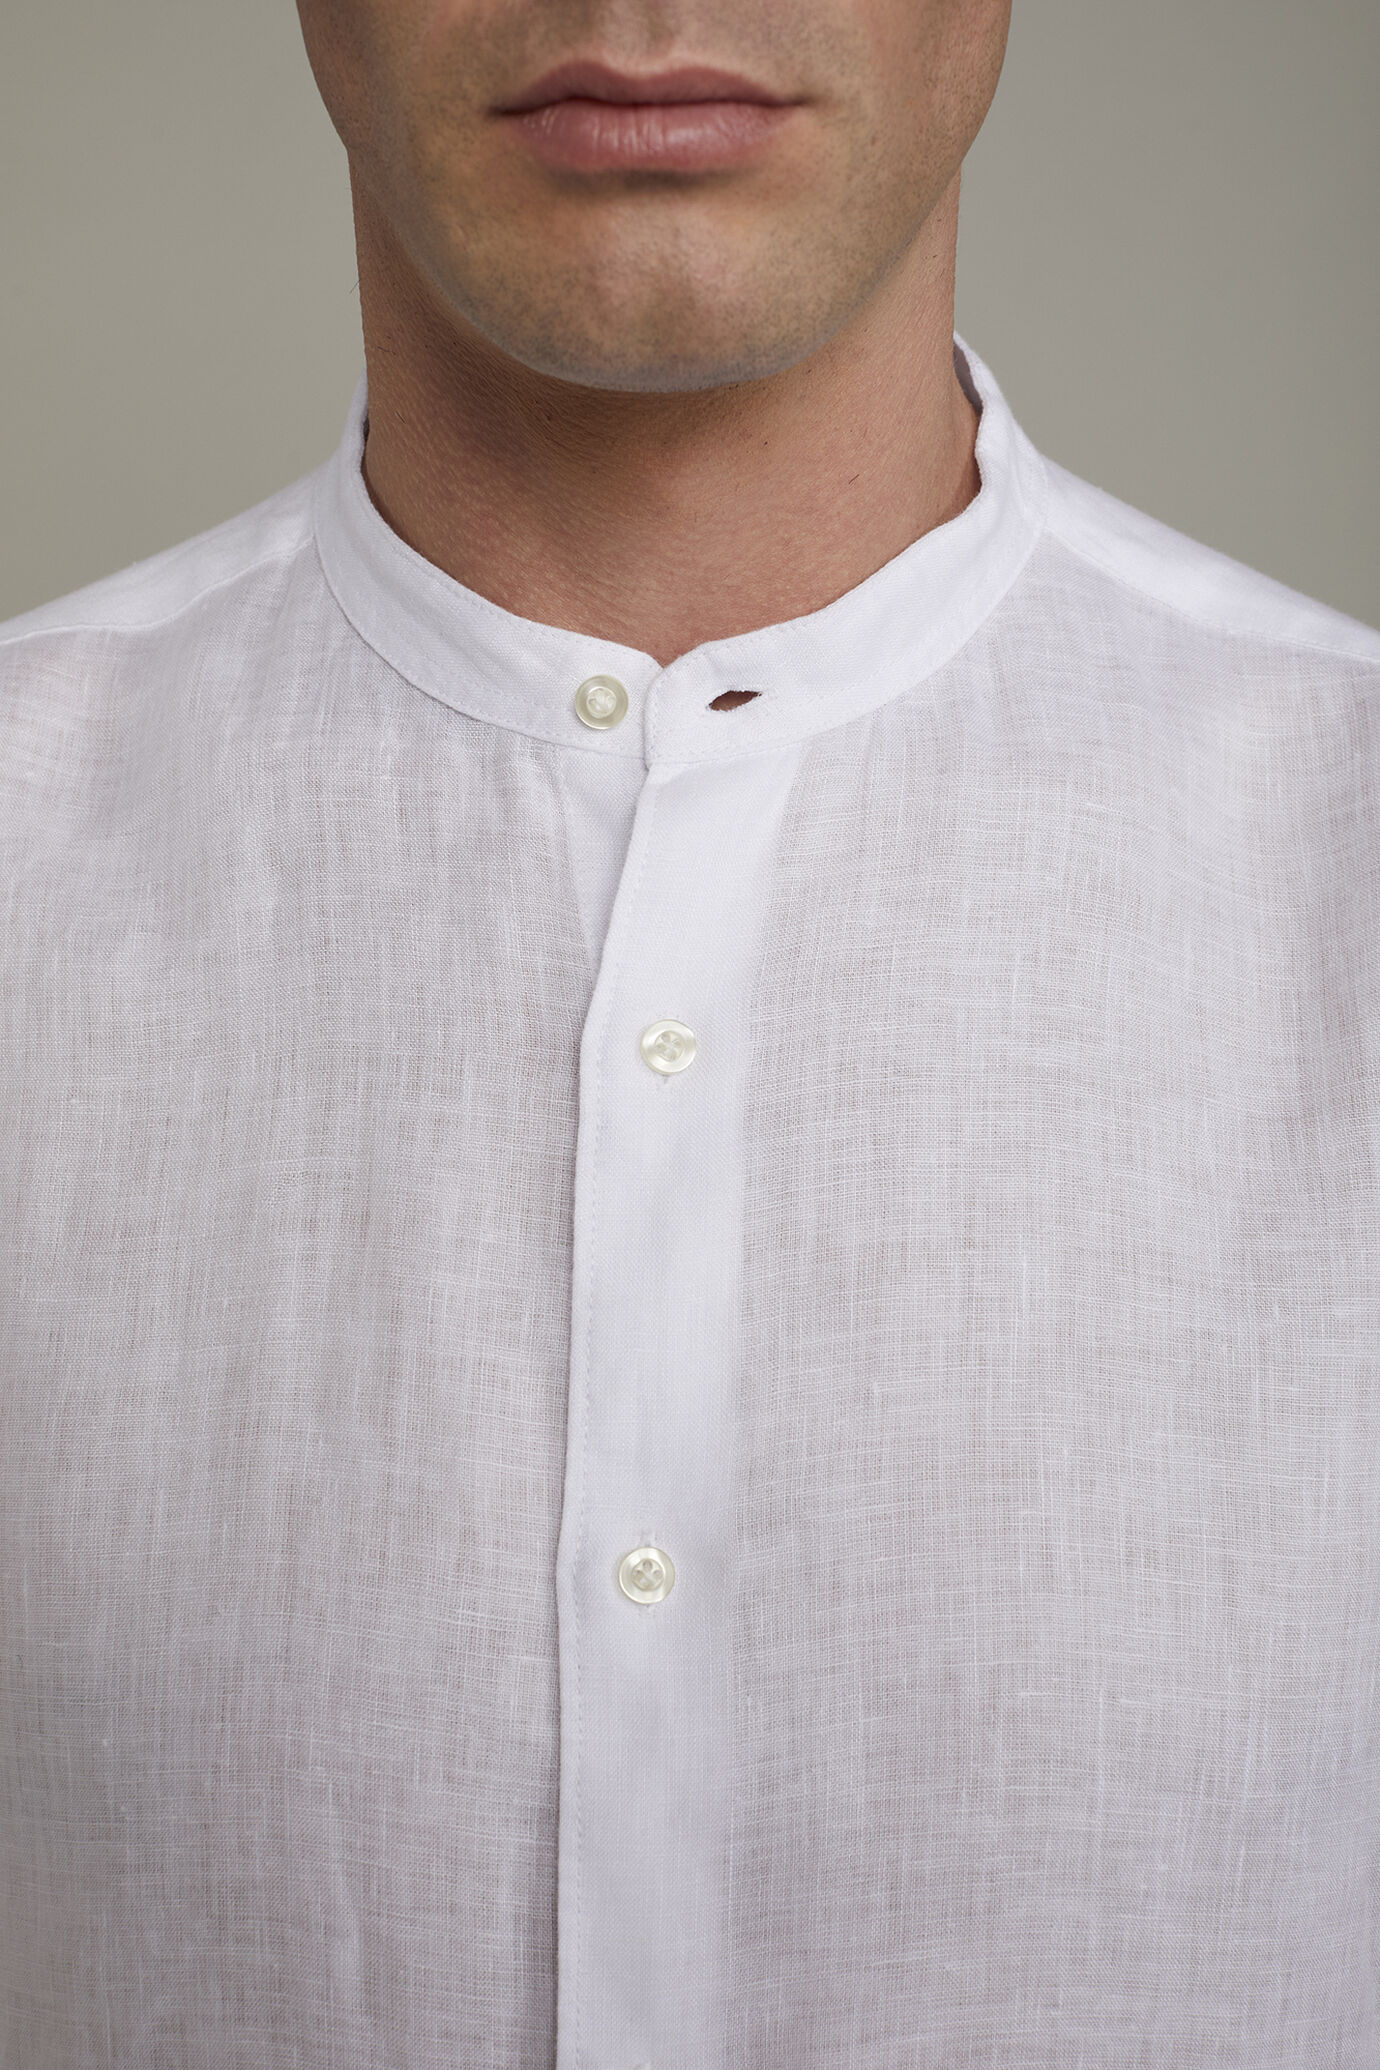 Camicia casual uomo collo coreano 100% lino comfort fit image number 3